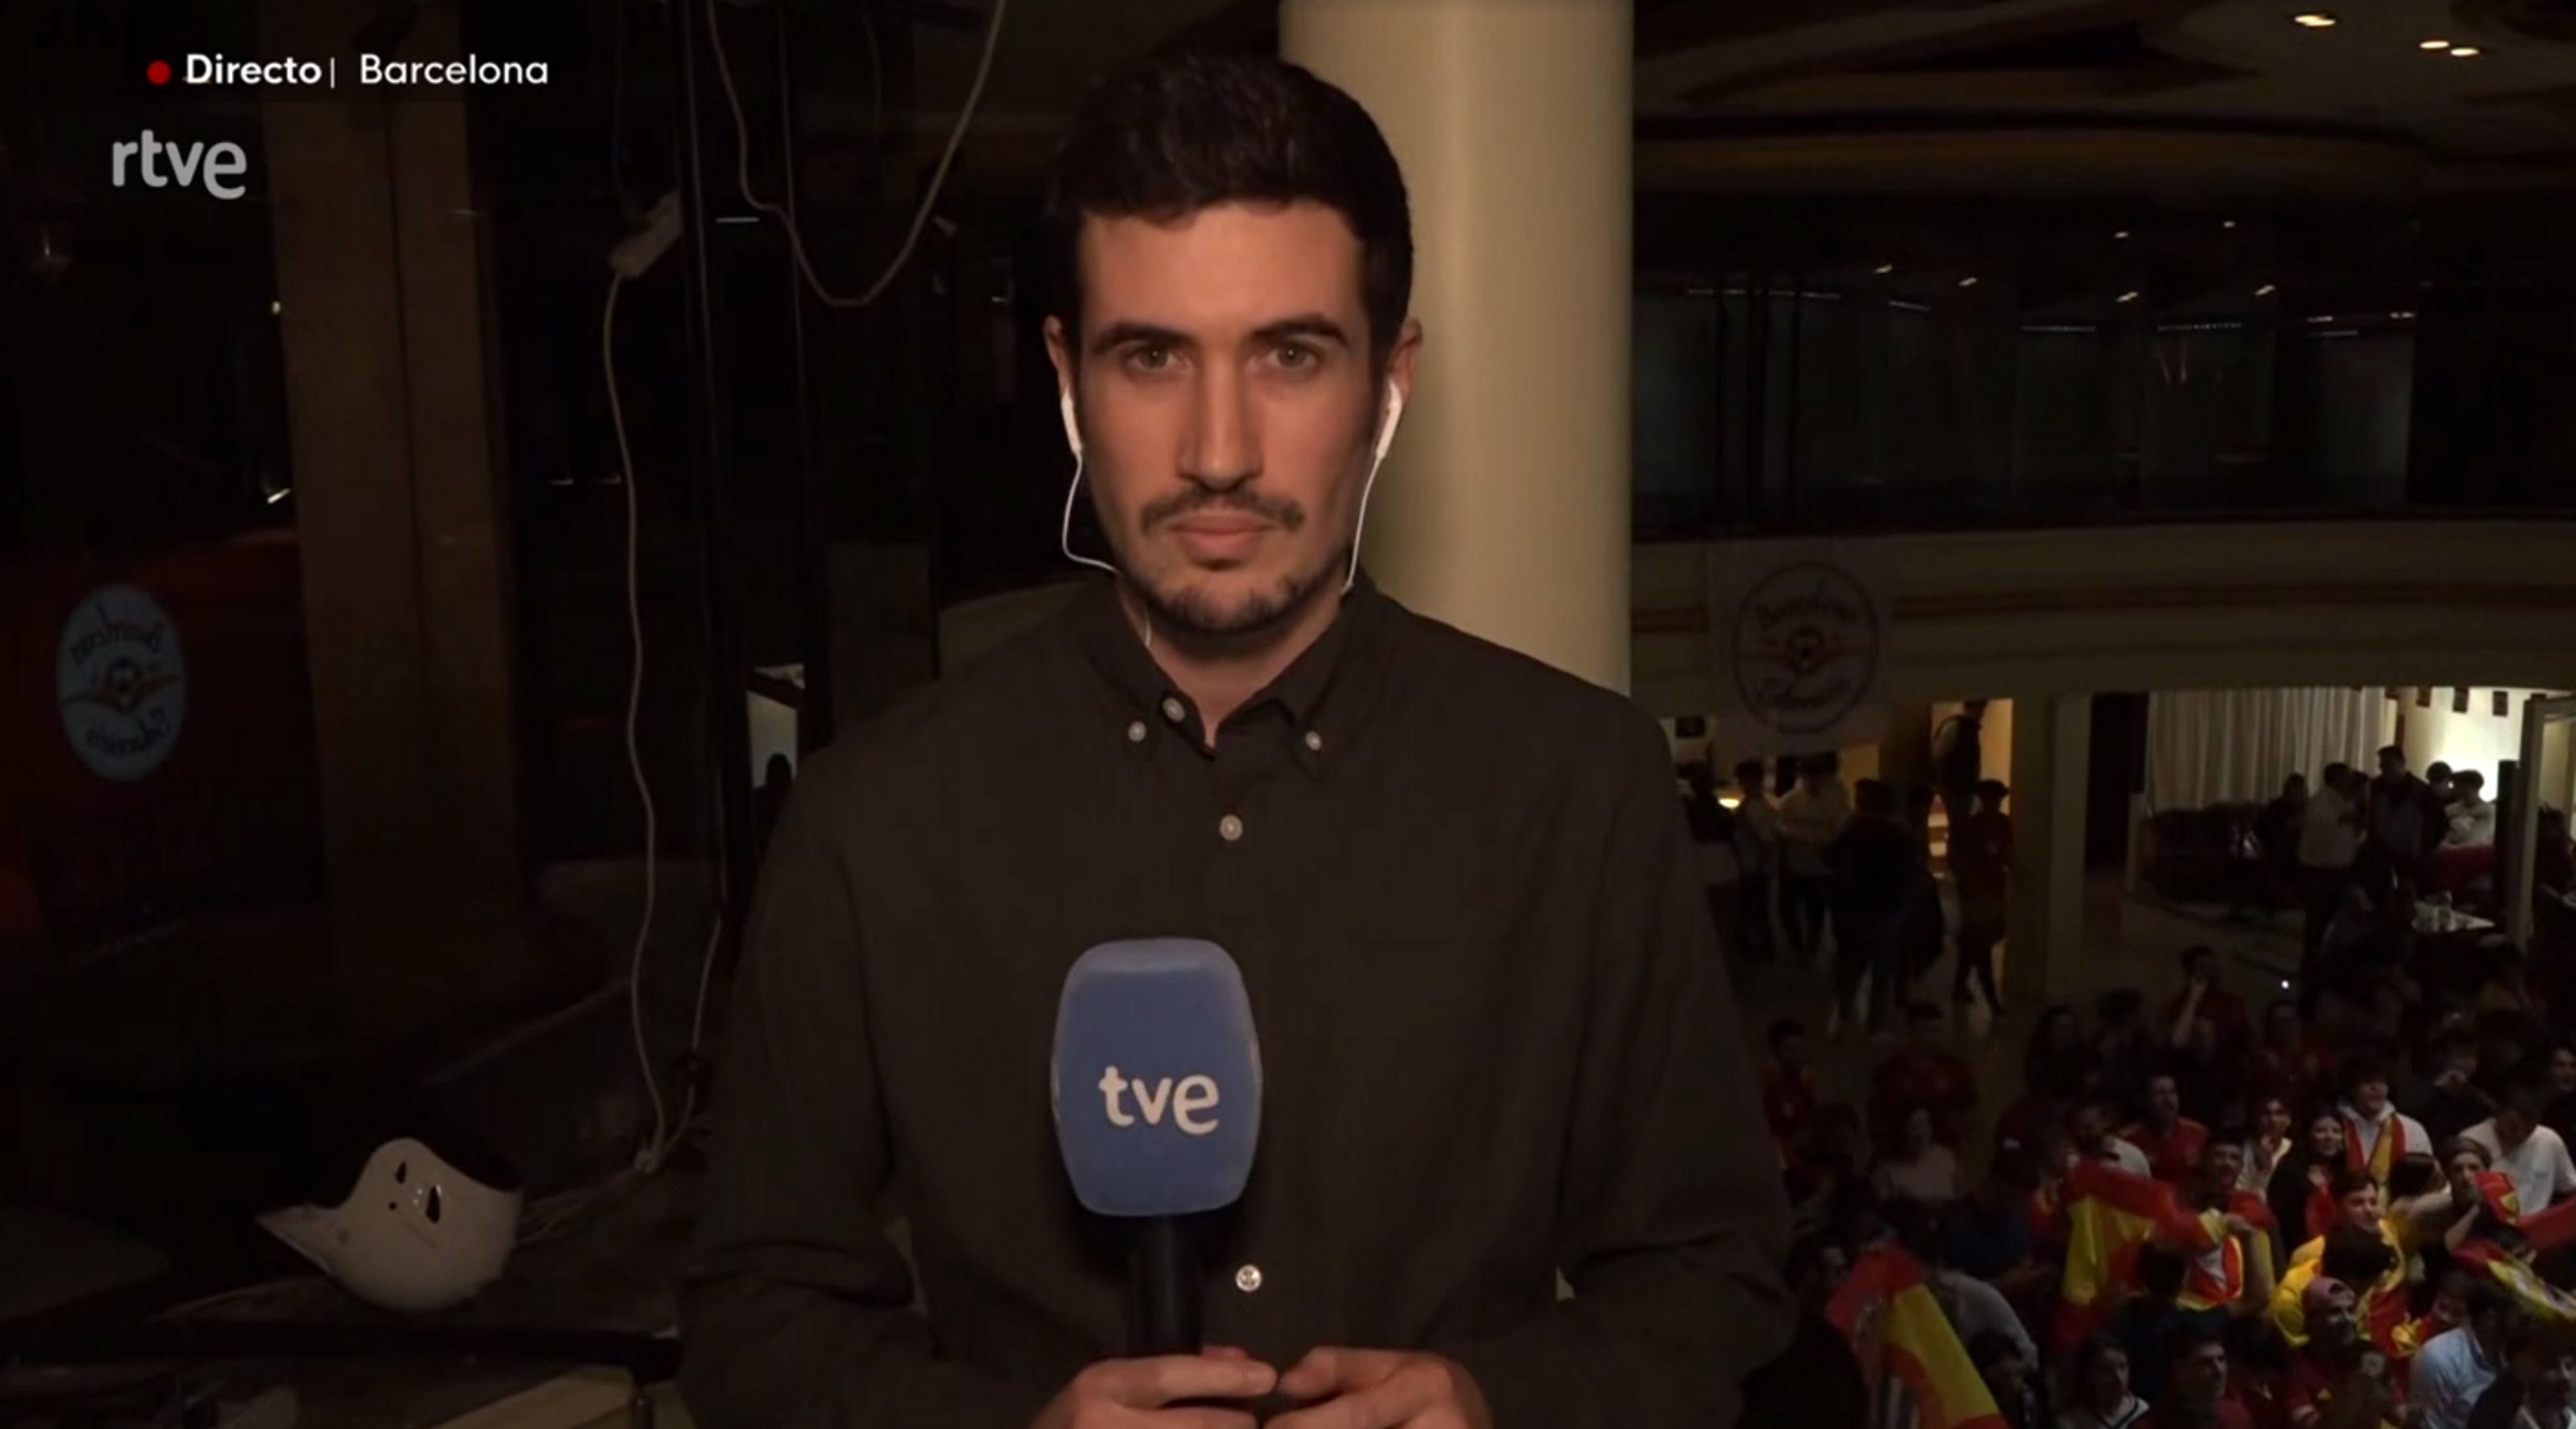 Ridícul del Telediario de TVE a Barcelona amb la selecció: "No cabe un alfiler"